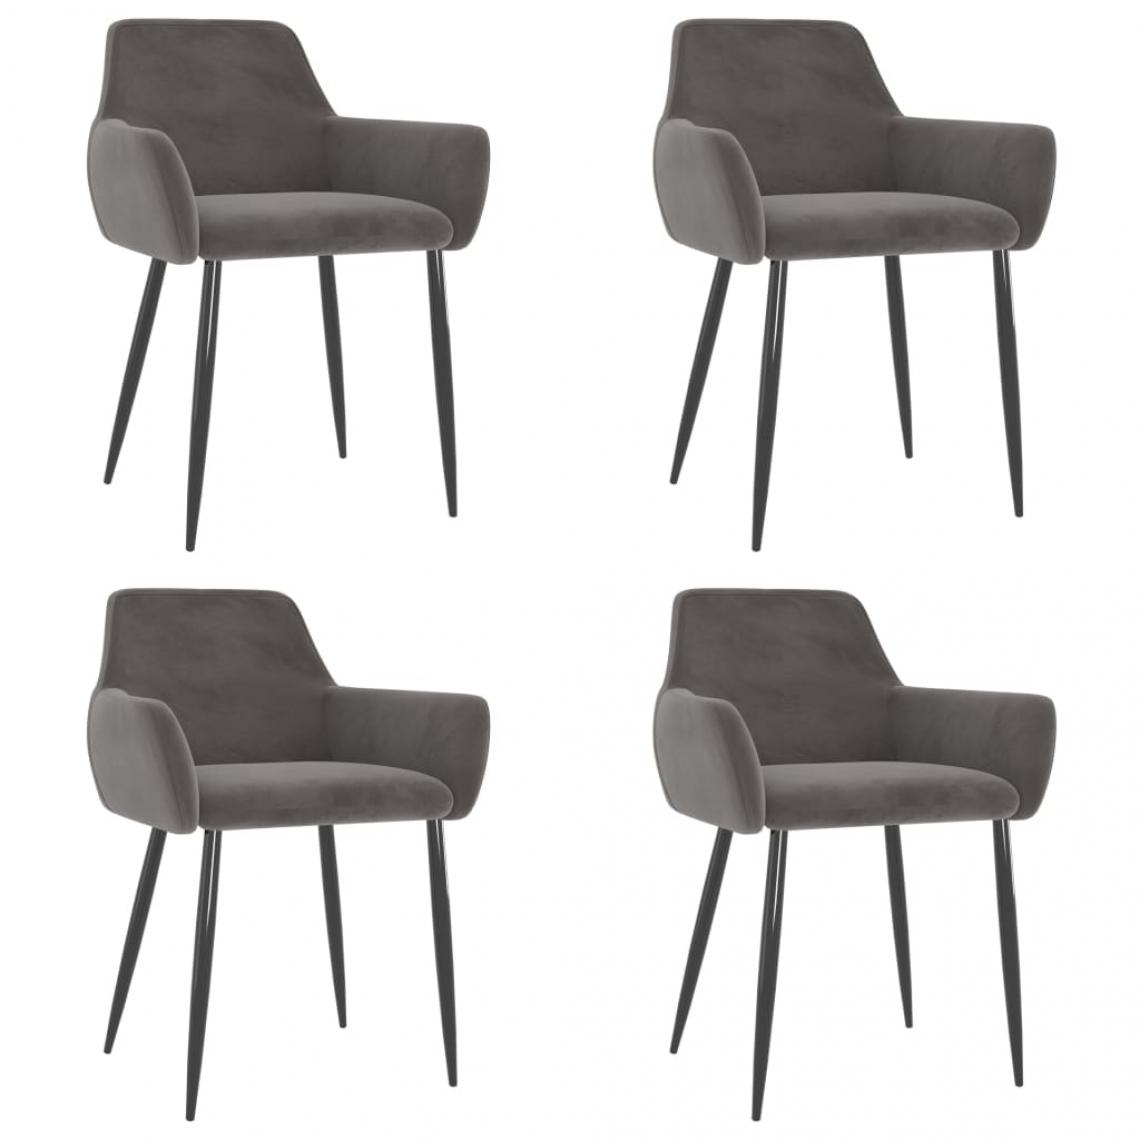 Decoshop26 - Lot de 4 chaises de salle à manger cuisine design moderne velours gris foncé CDS021574 - Chaises